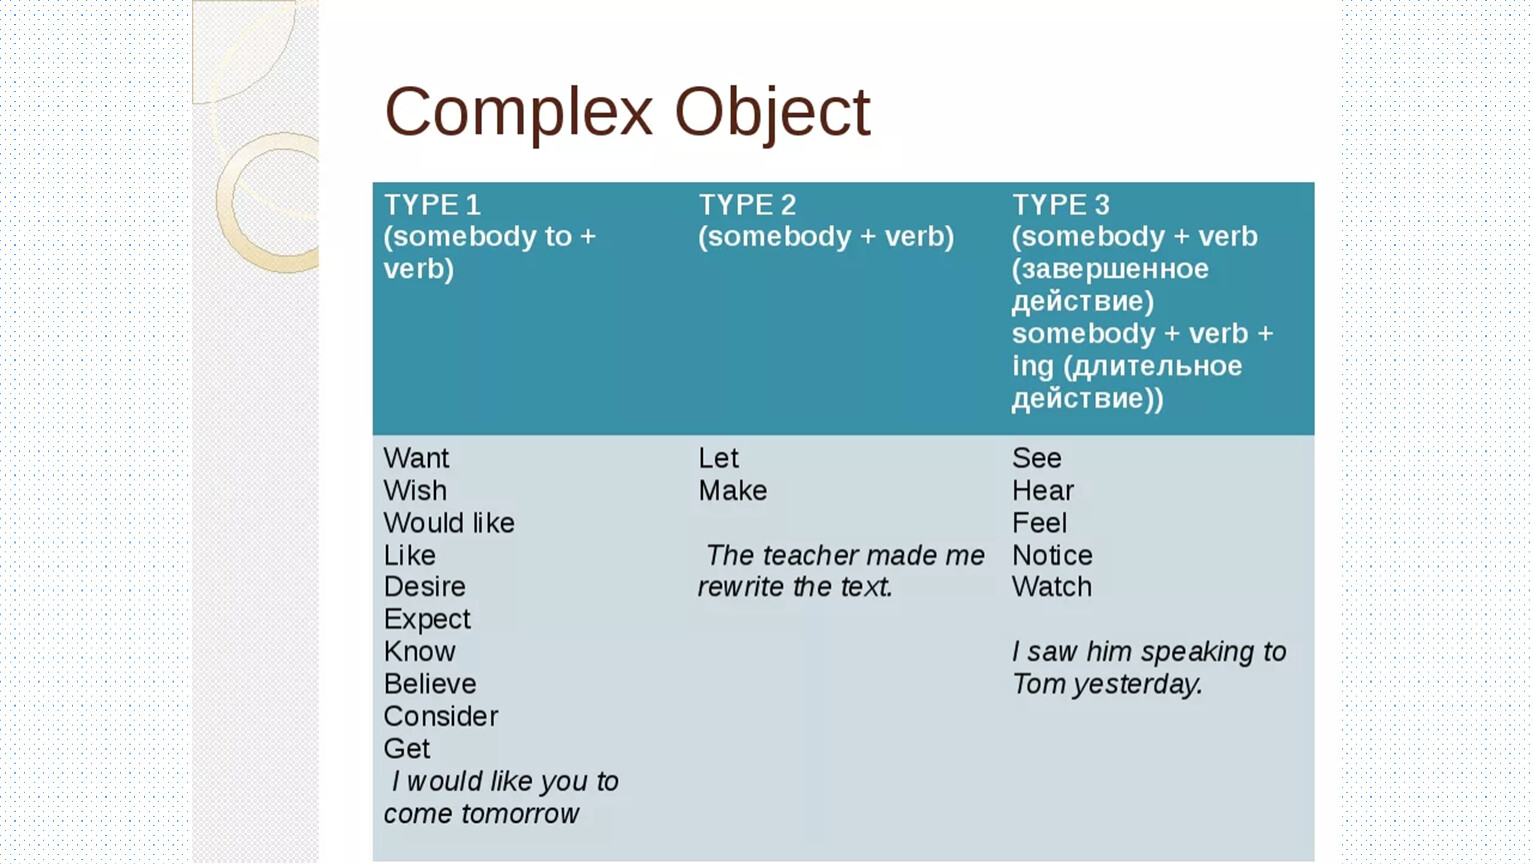 Object member. Конструкция сложное дополнение в английском языке. Типы сложного дополнения в английском языке. Правило комплекс Обджект в английском. Глаголы комплекс Обджект.